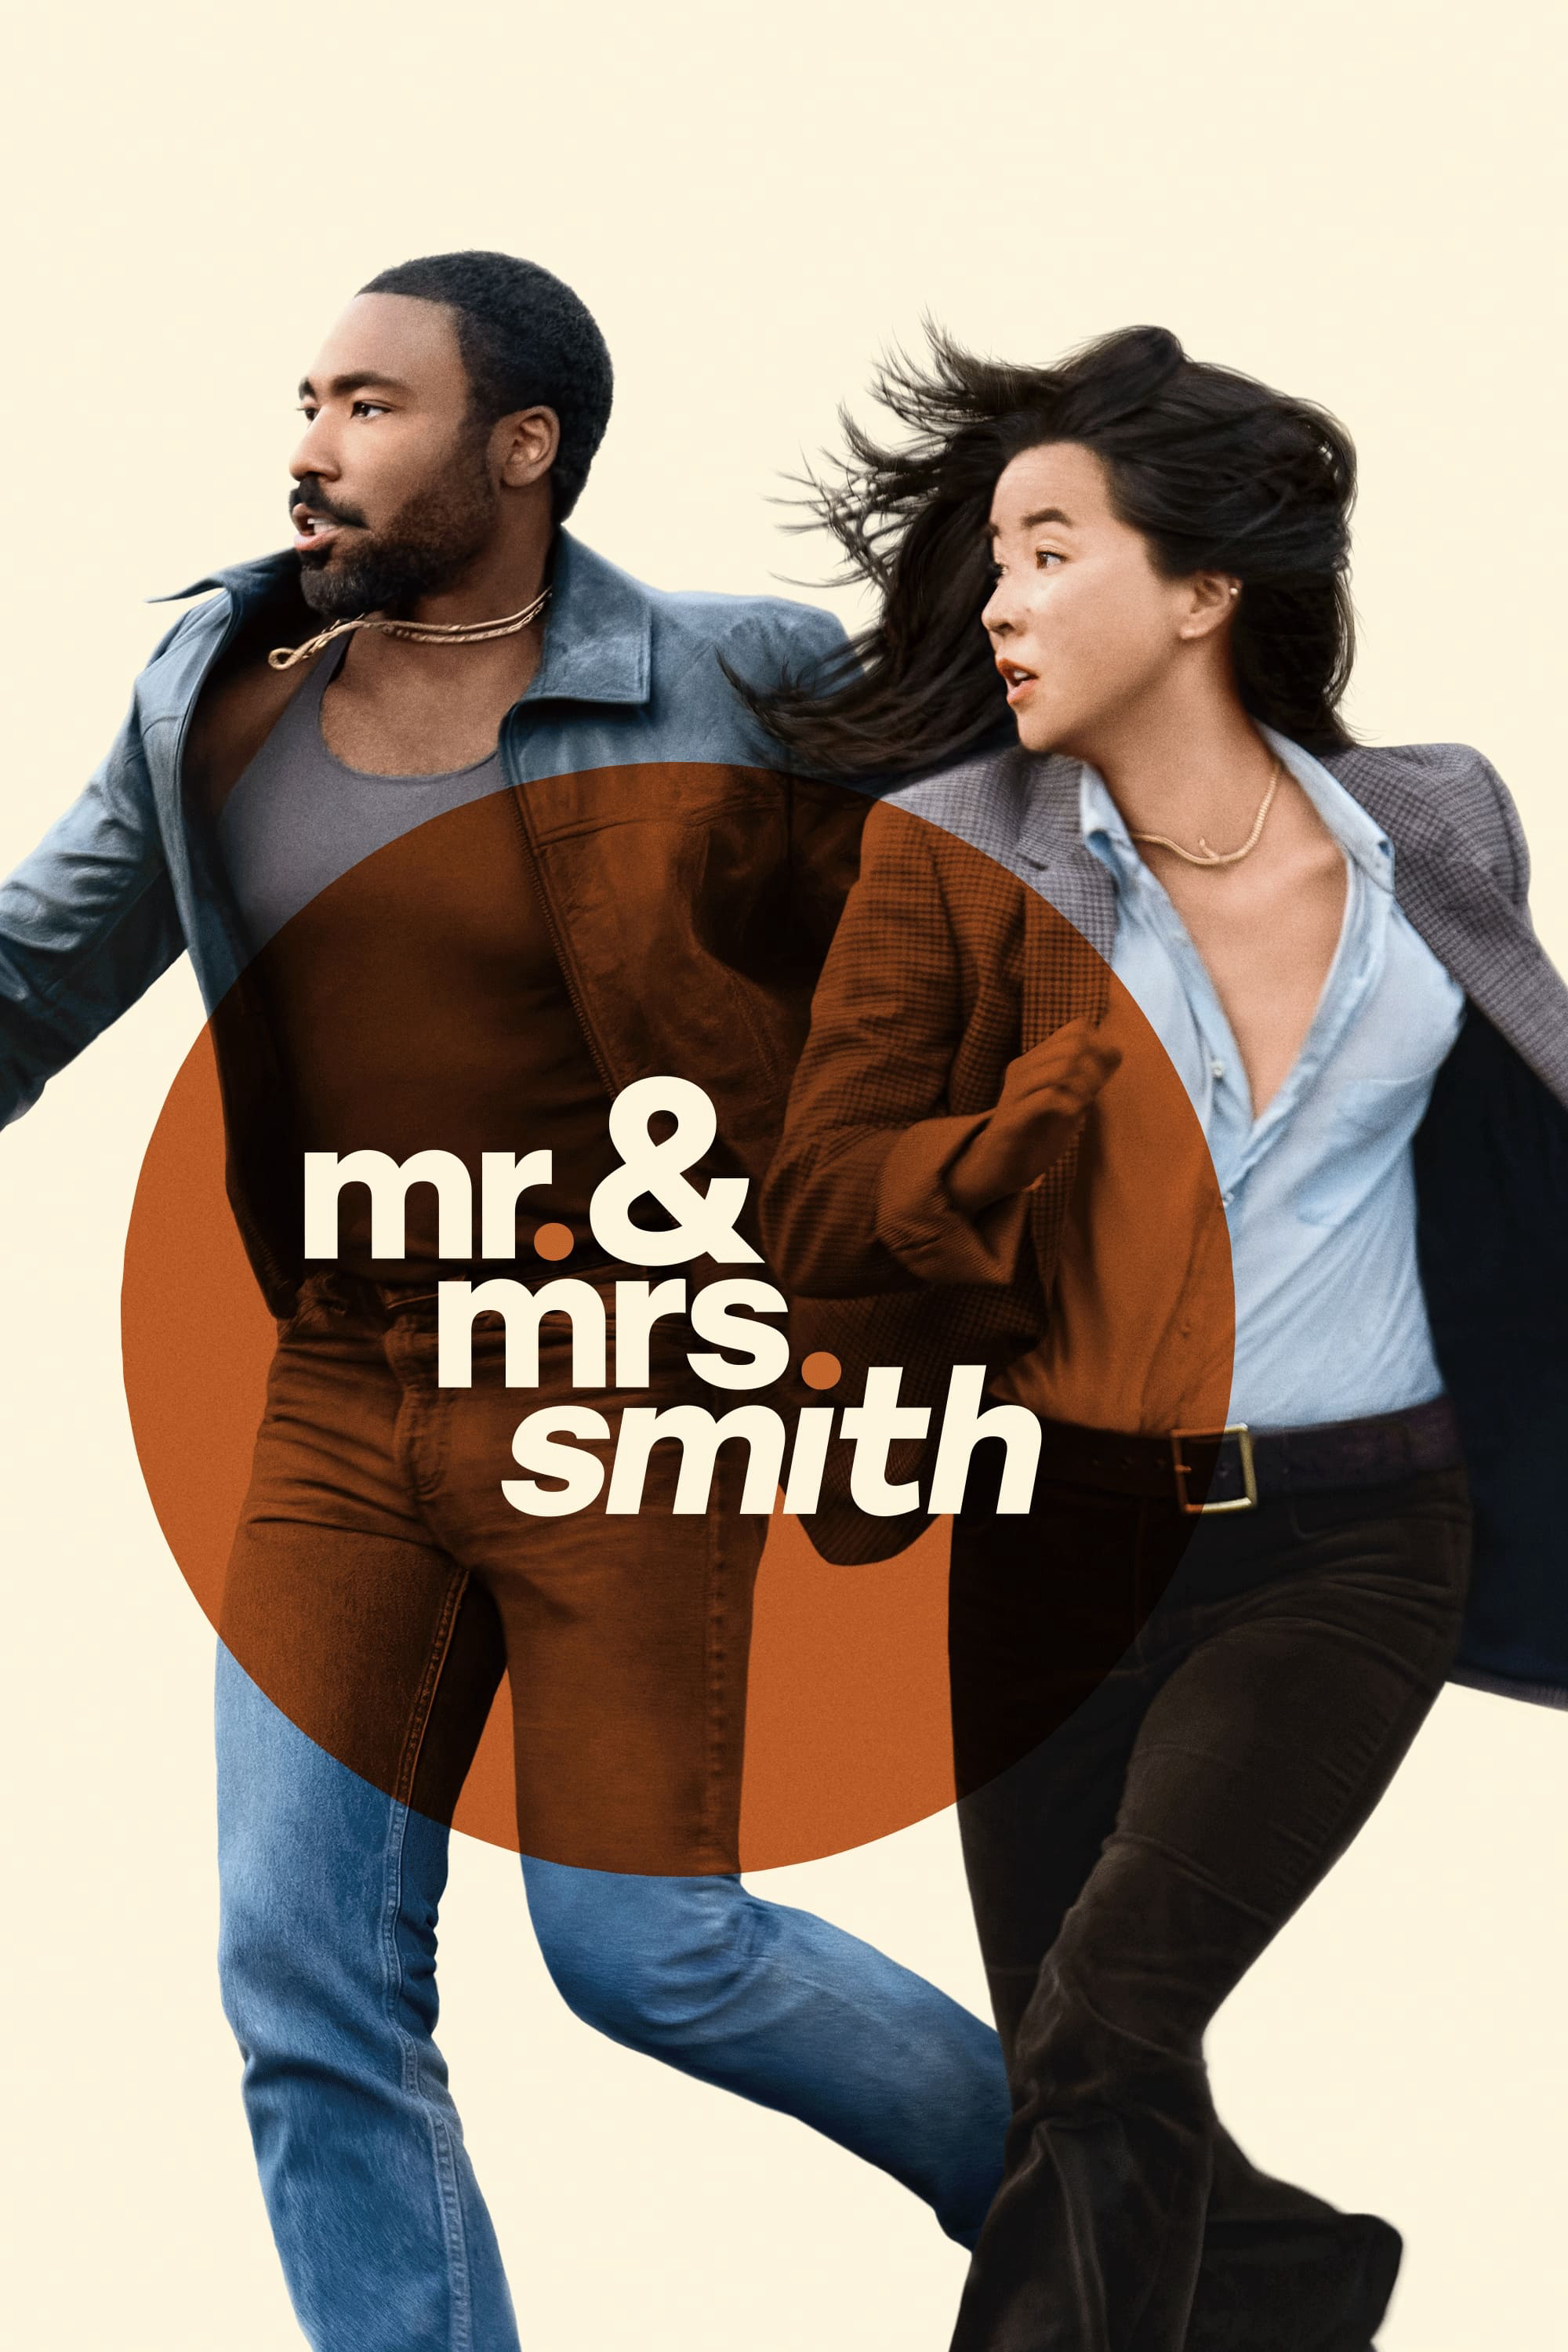 Poster Phim Ông Bà Smith (Mr. & Mrs. Smith)